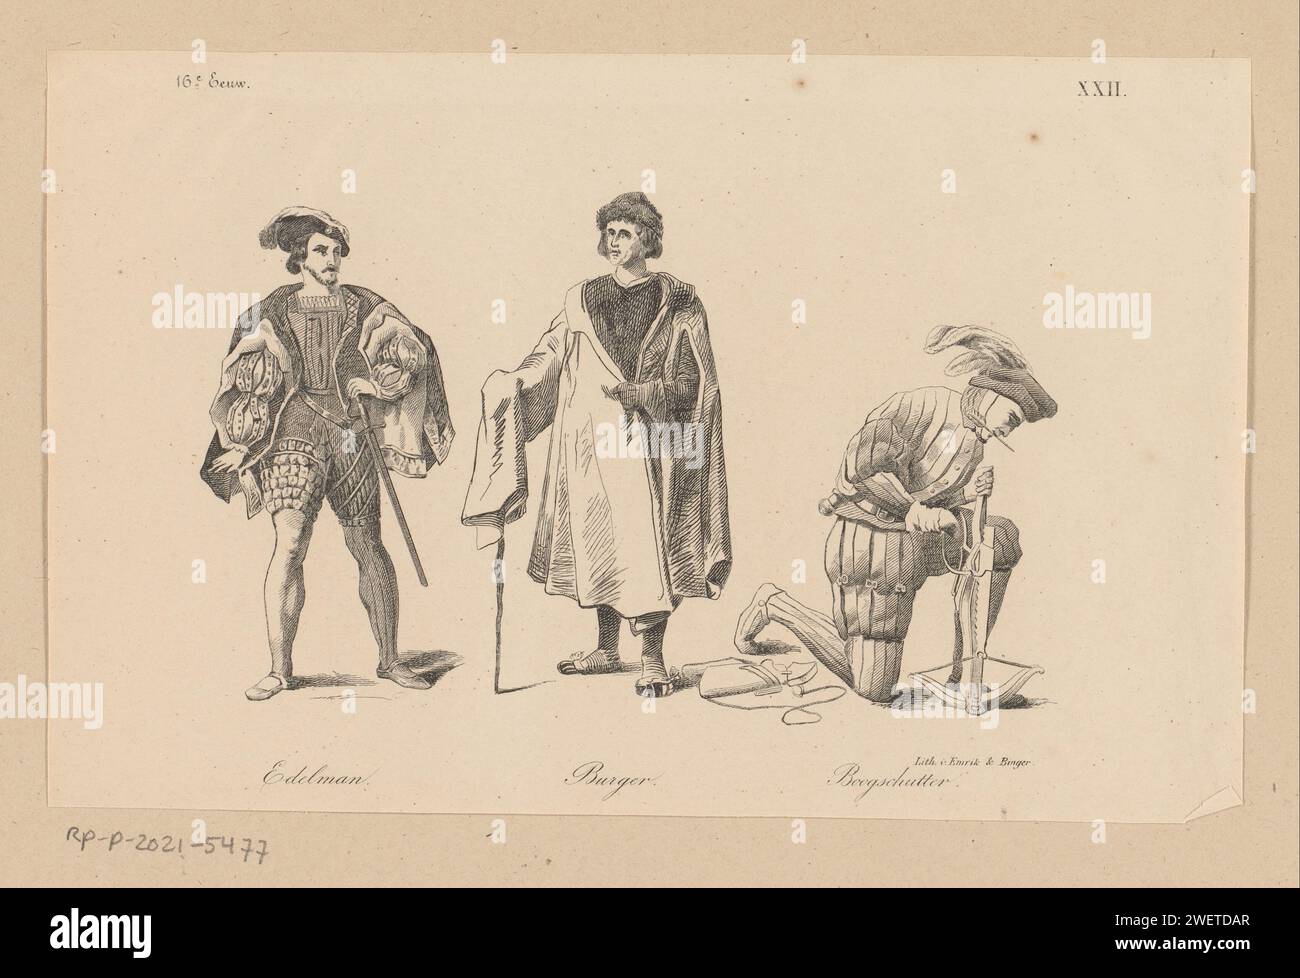 Edelman, hamburger e arciere in abbigliamento del XVI secolo, anonimo, 1857 stampe numerate in alto a destra: XXII. vestiti di carta, costume. le armi di archer Foto Stock